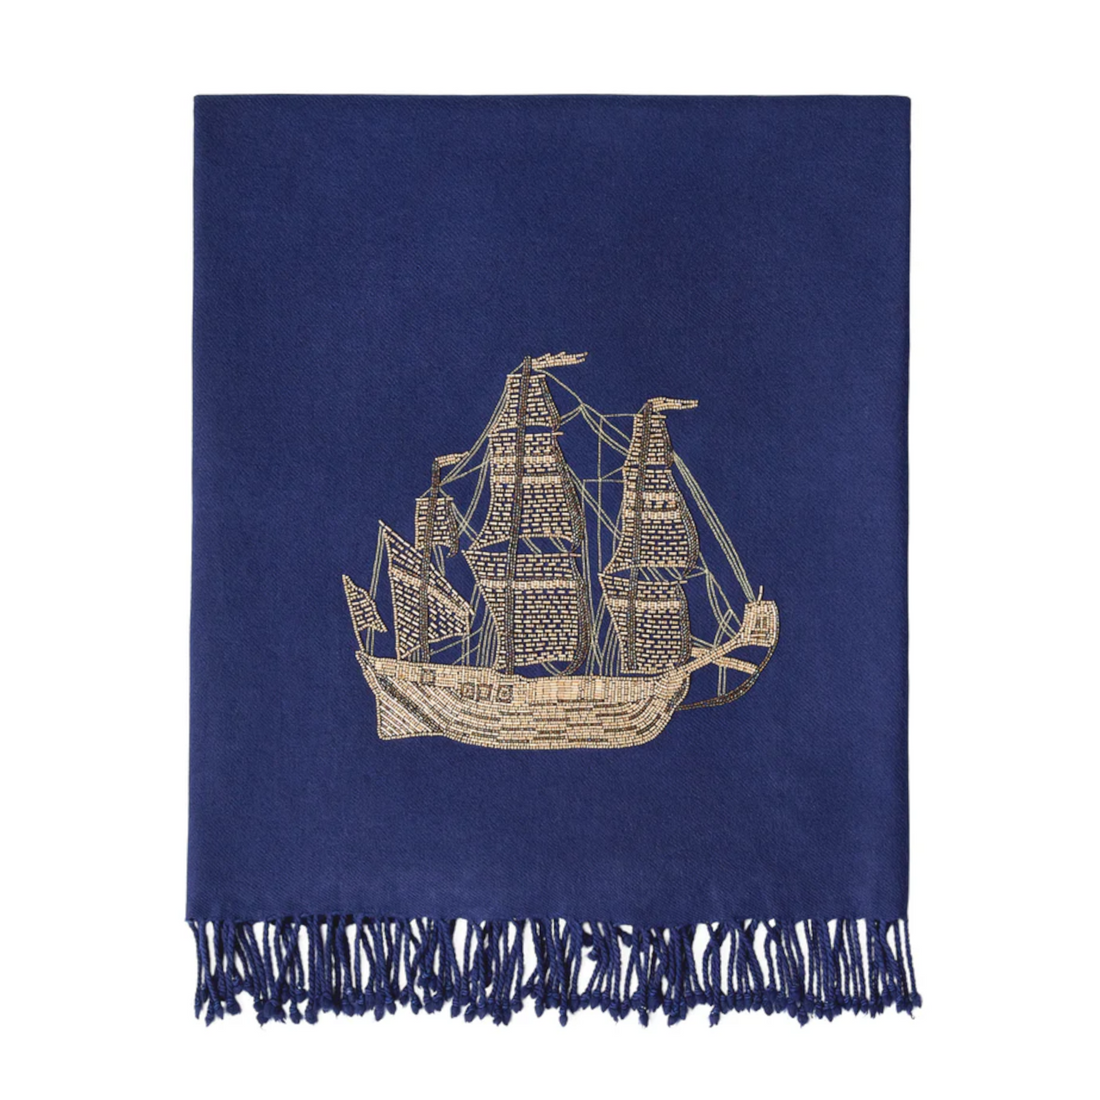 SHIP EMBELLISHED blanket in navy blue